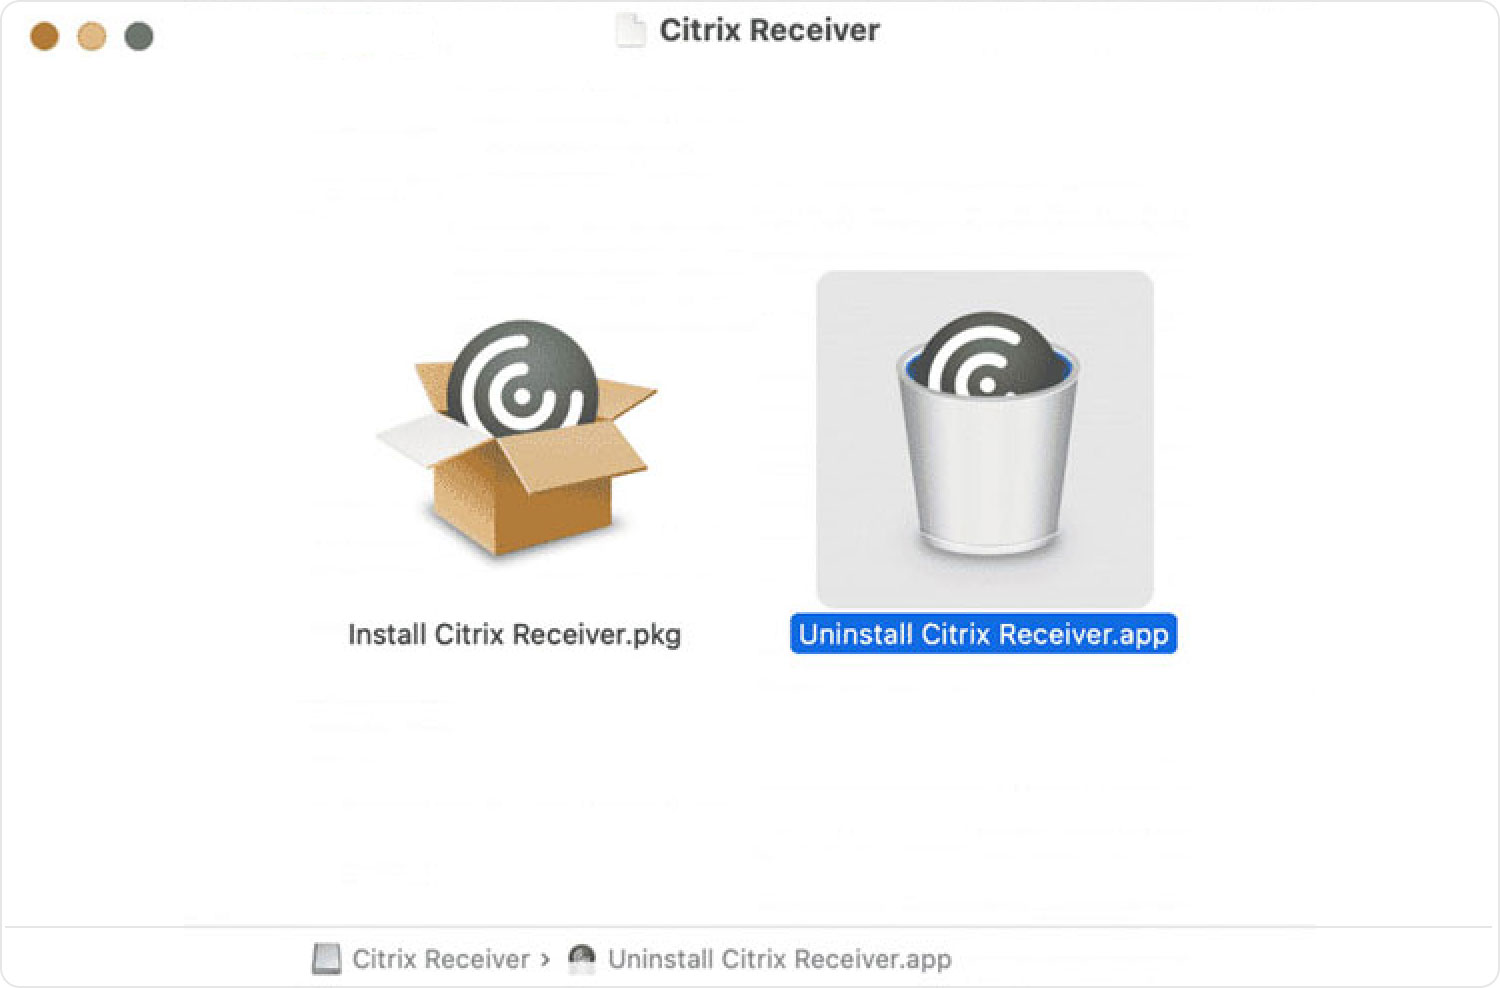 Desinstale Citrix Receiver en Mac manualmente